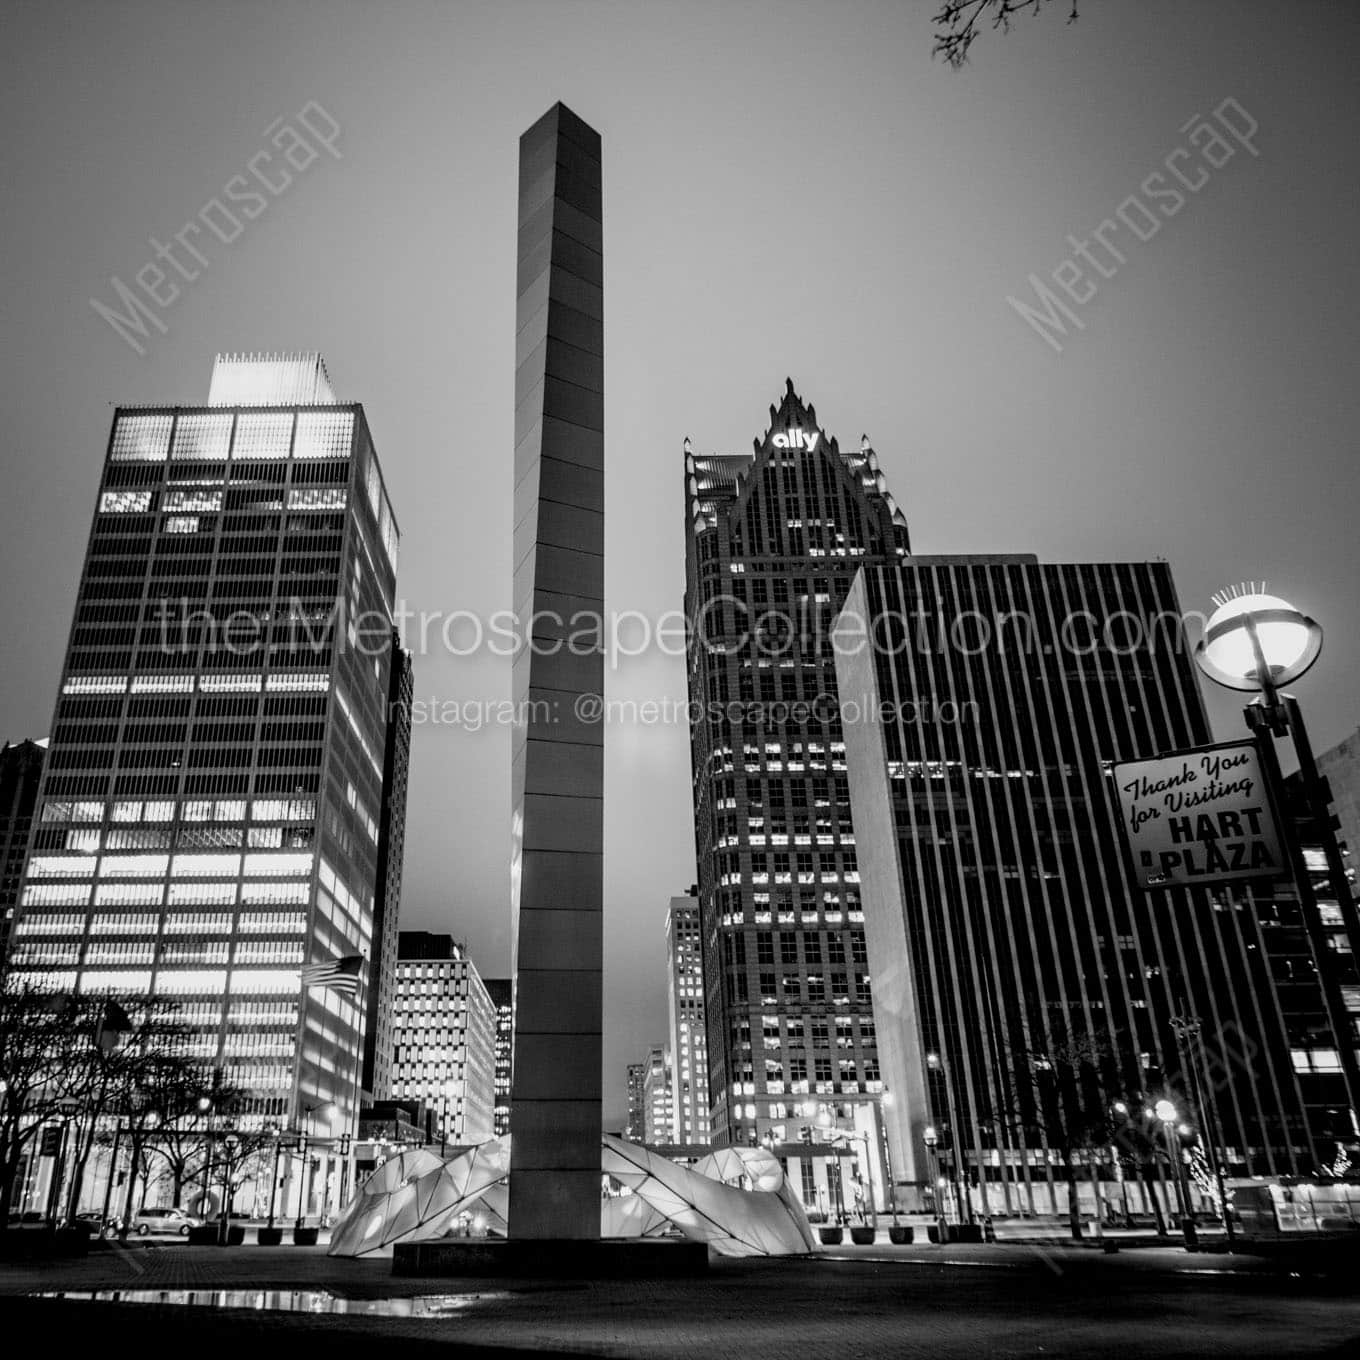 hart plaza downtown detroit skyline Black & White Office Art